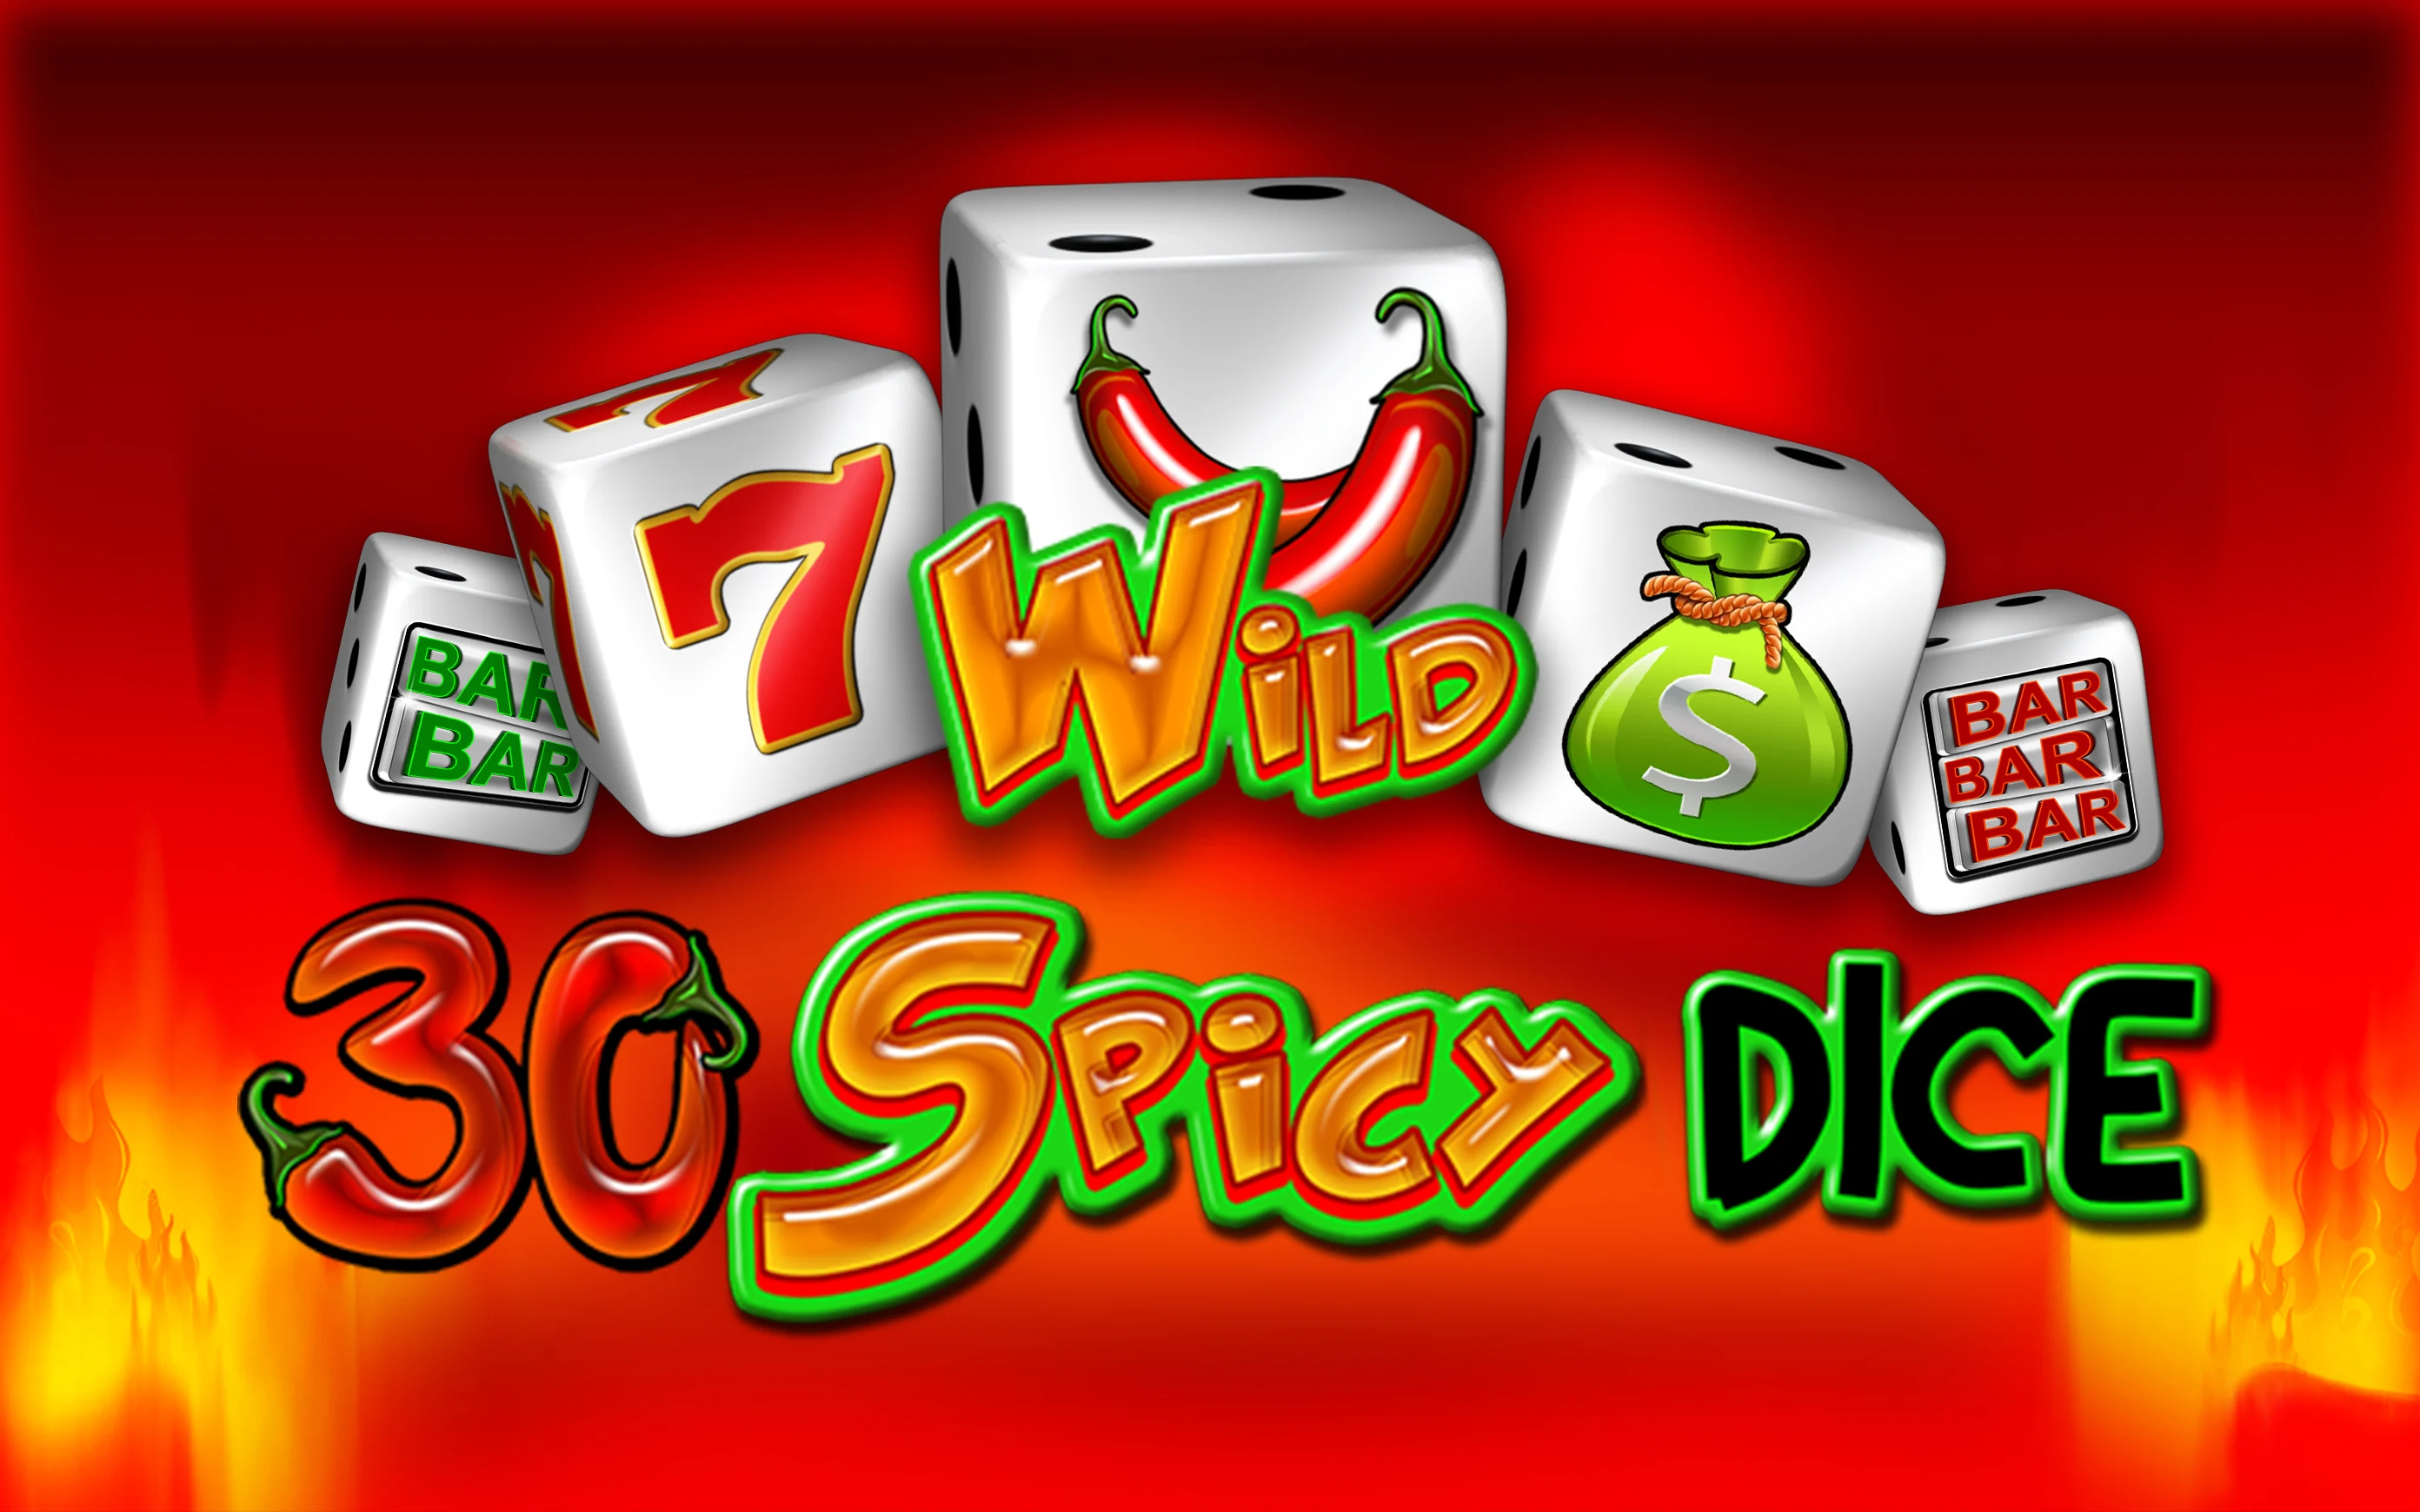 Starcasino.be online casino üzerinden 30 Spicy Dice oynayın